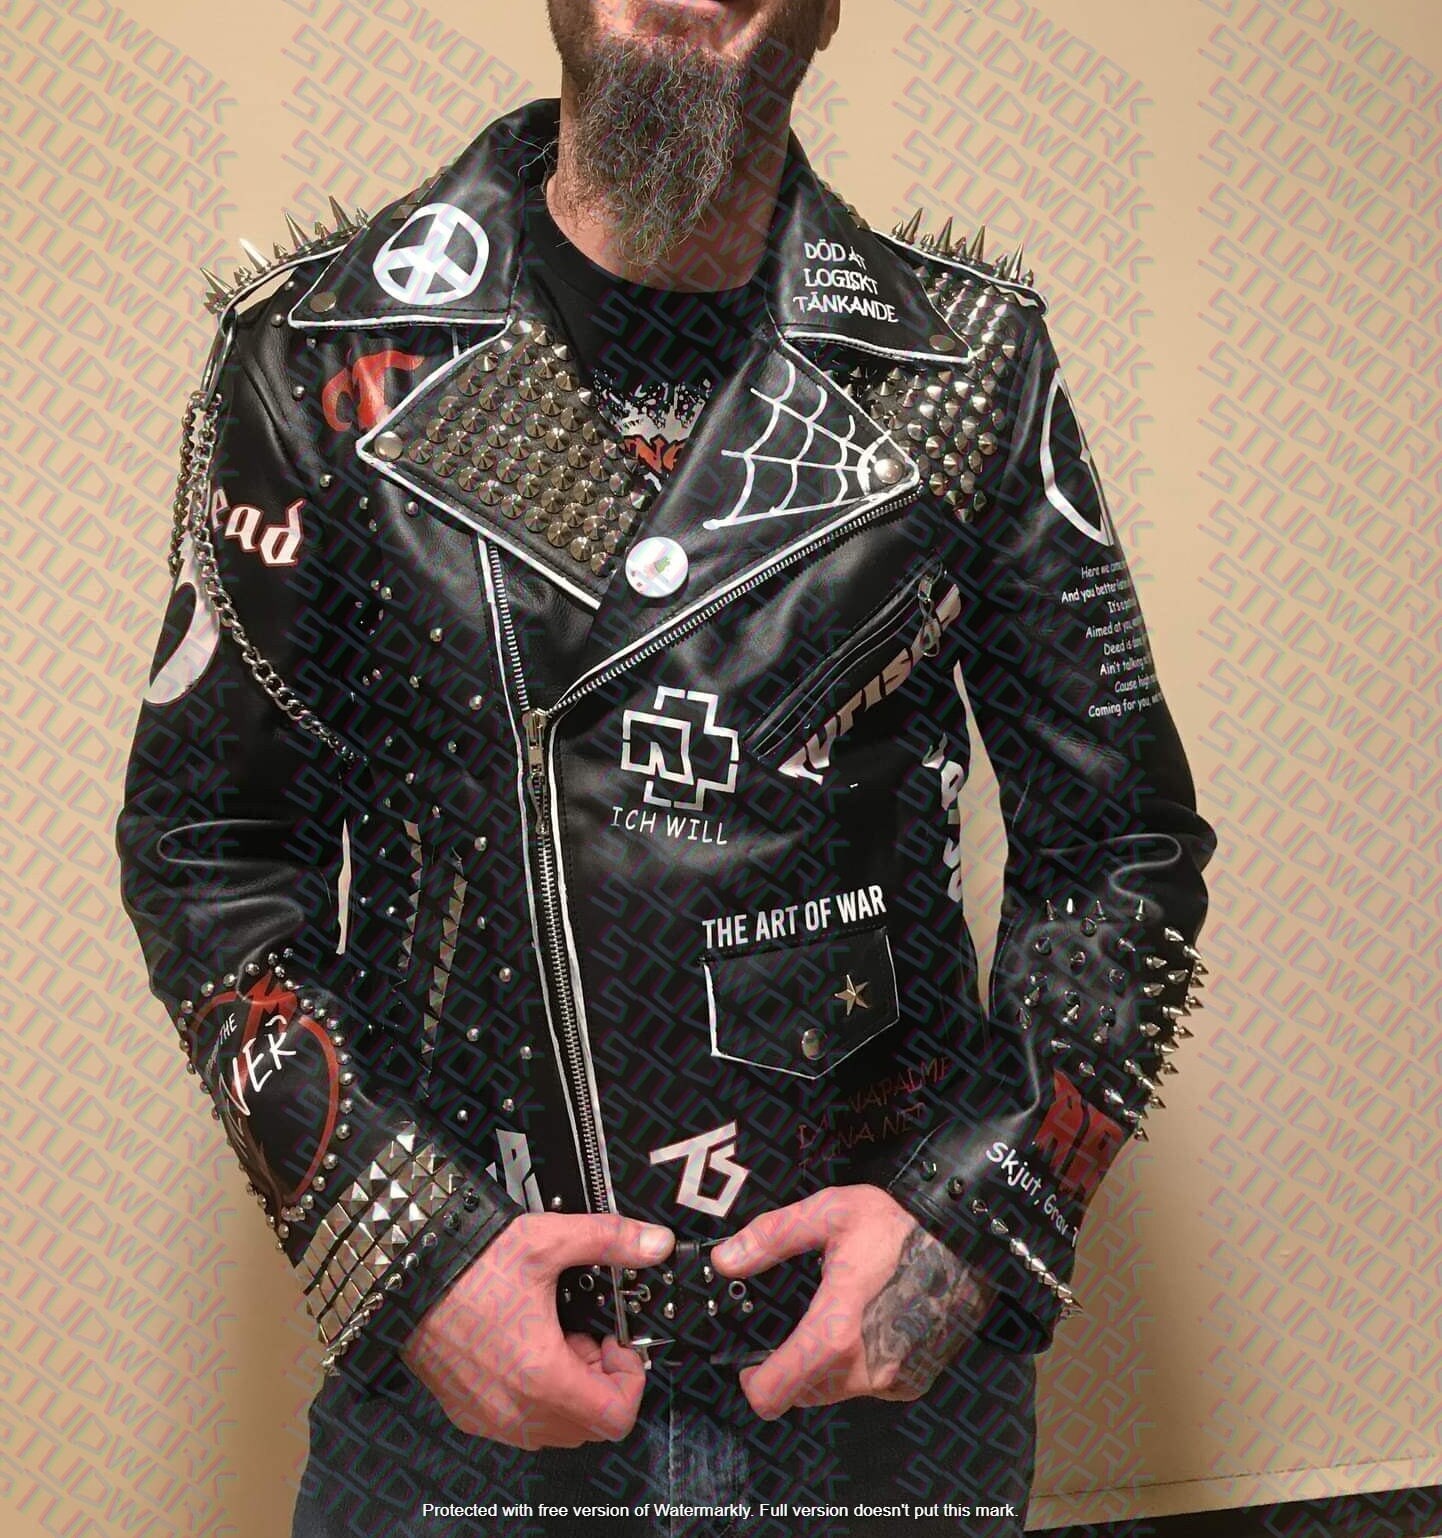 Personalisierte Herren Multi-Studded Premium Leder Biker Patches Gothic Steampunk Fashion Brando Jacke von studwork